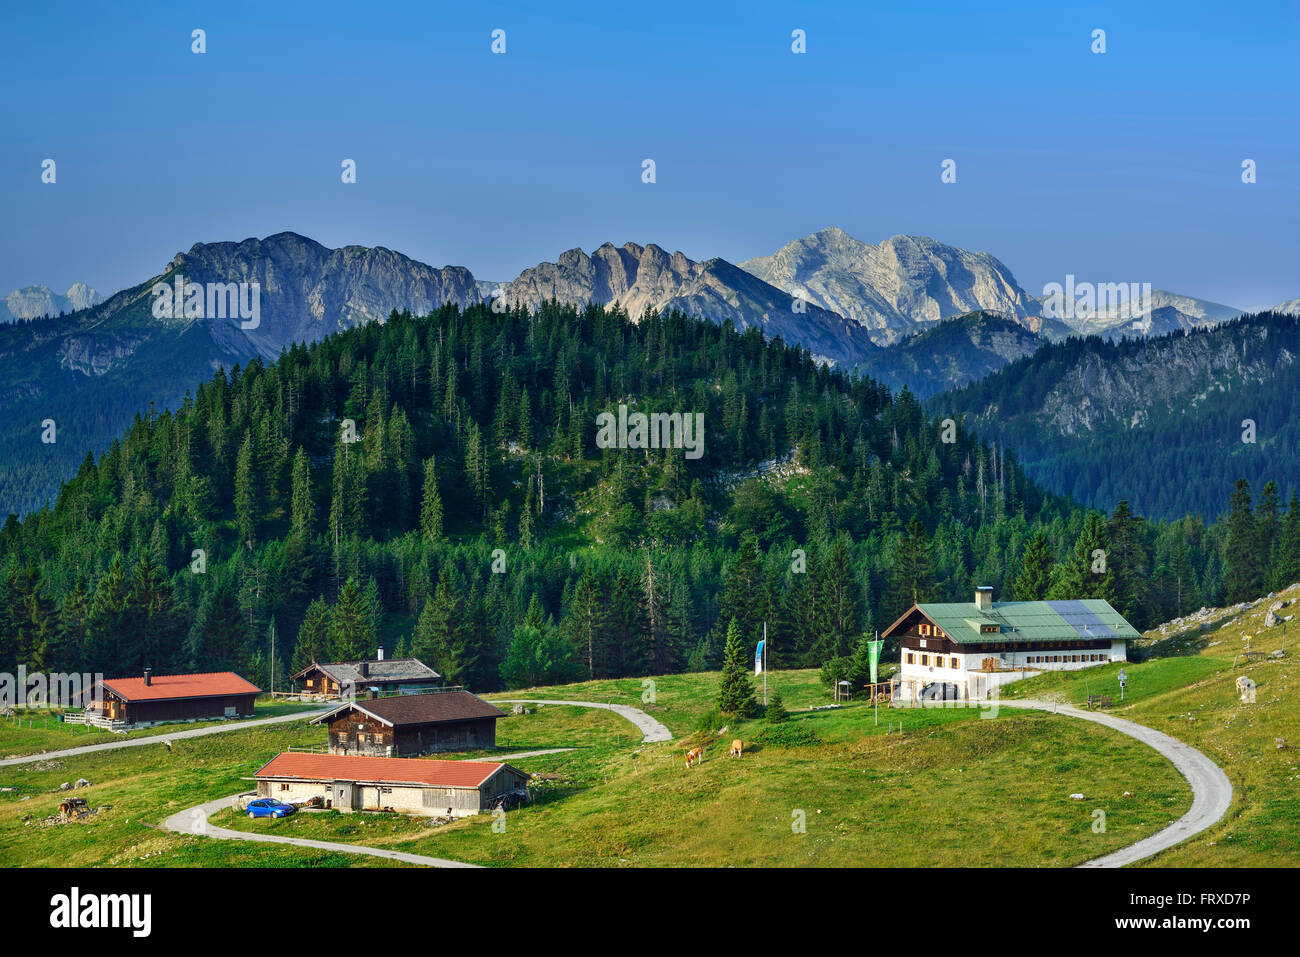 Alpine hut Schoenfeldalm in front of Schinder and Guffert, Bavarian Alps, Upper Bavaria, Bavaria, Germany Stock Photo